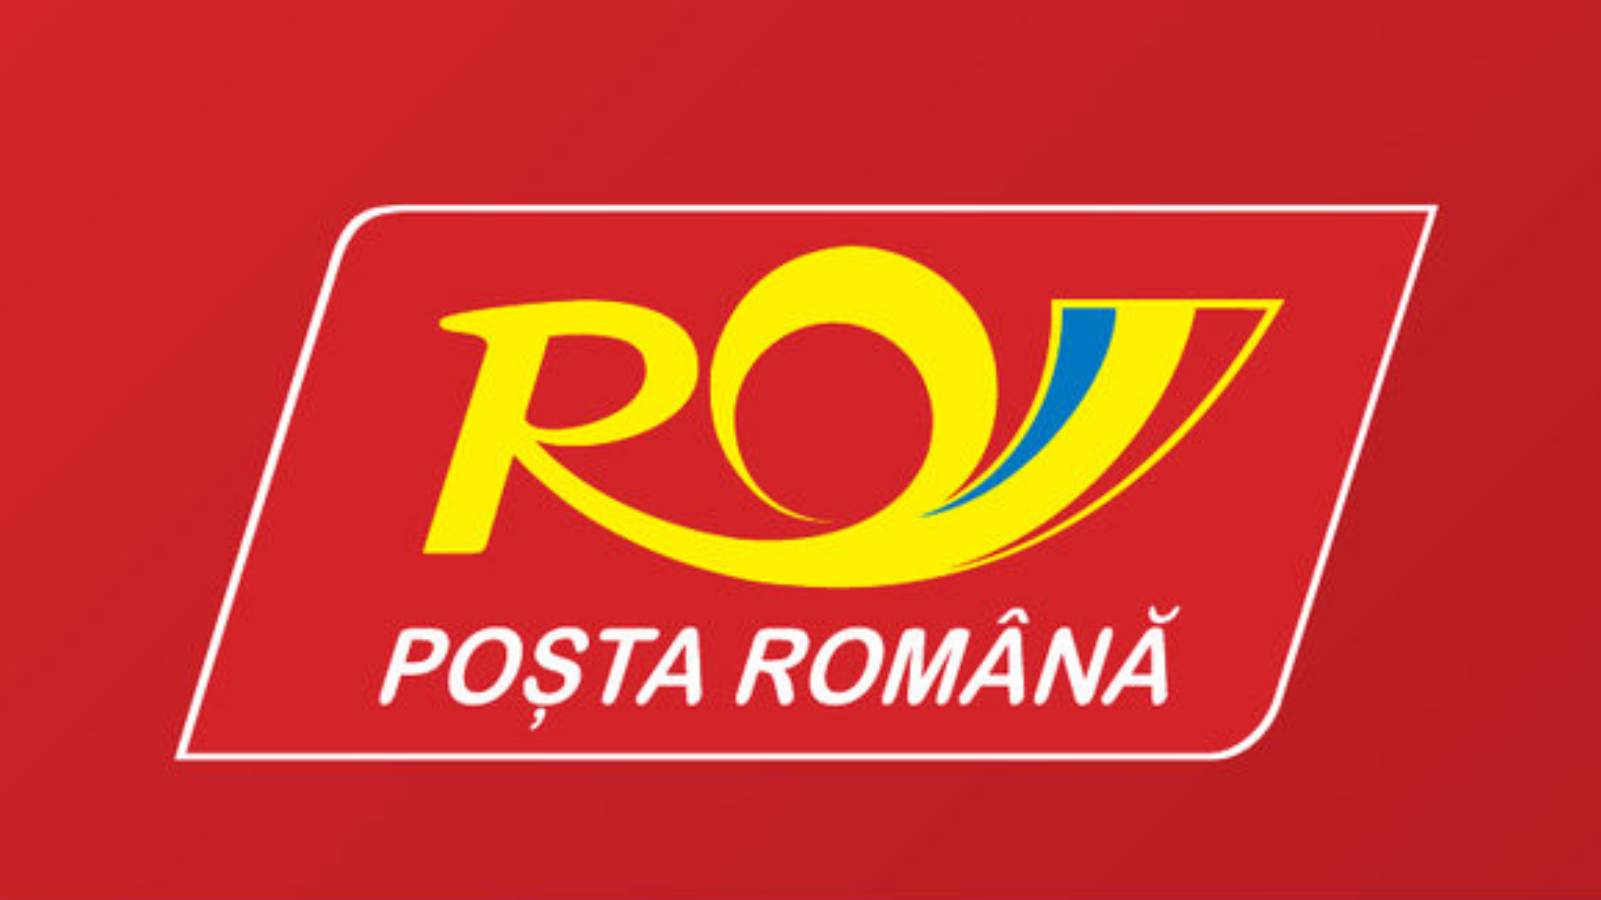 Envío urgente del correo rumano